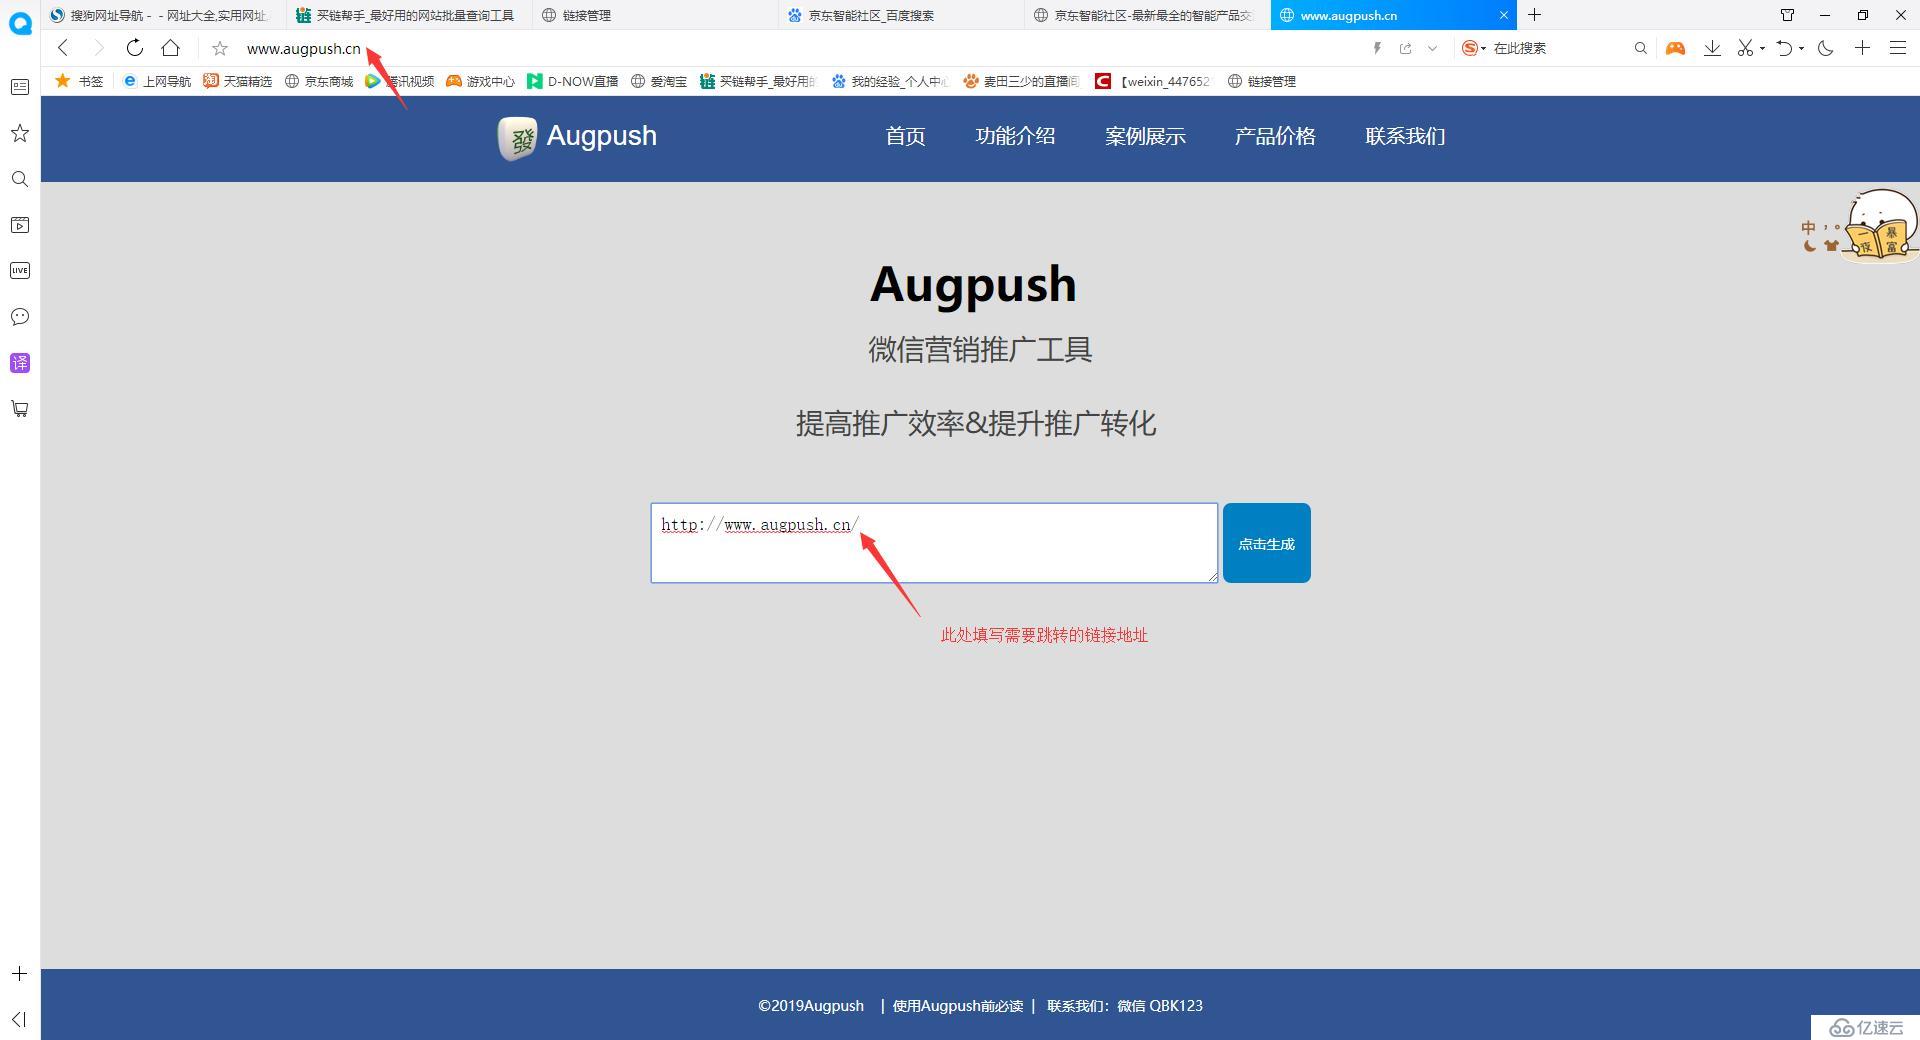 如何调用Augpush的微信跳转浏览器接口API实现微信跳转